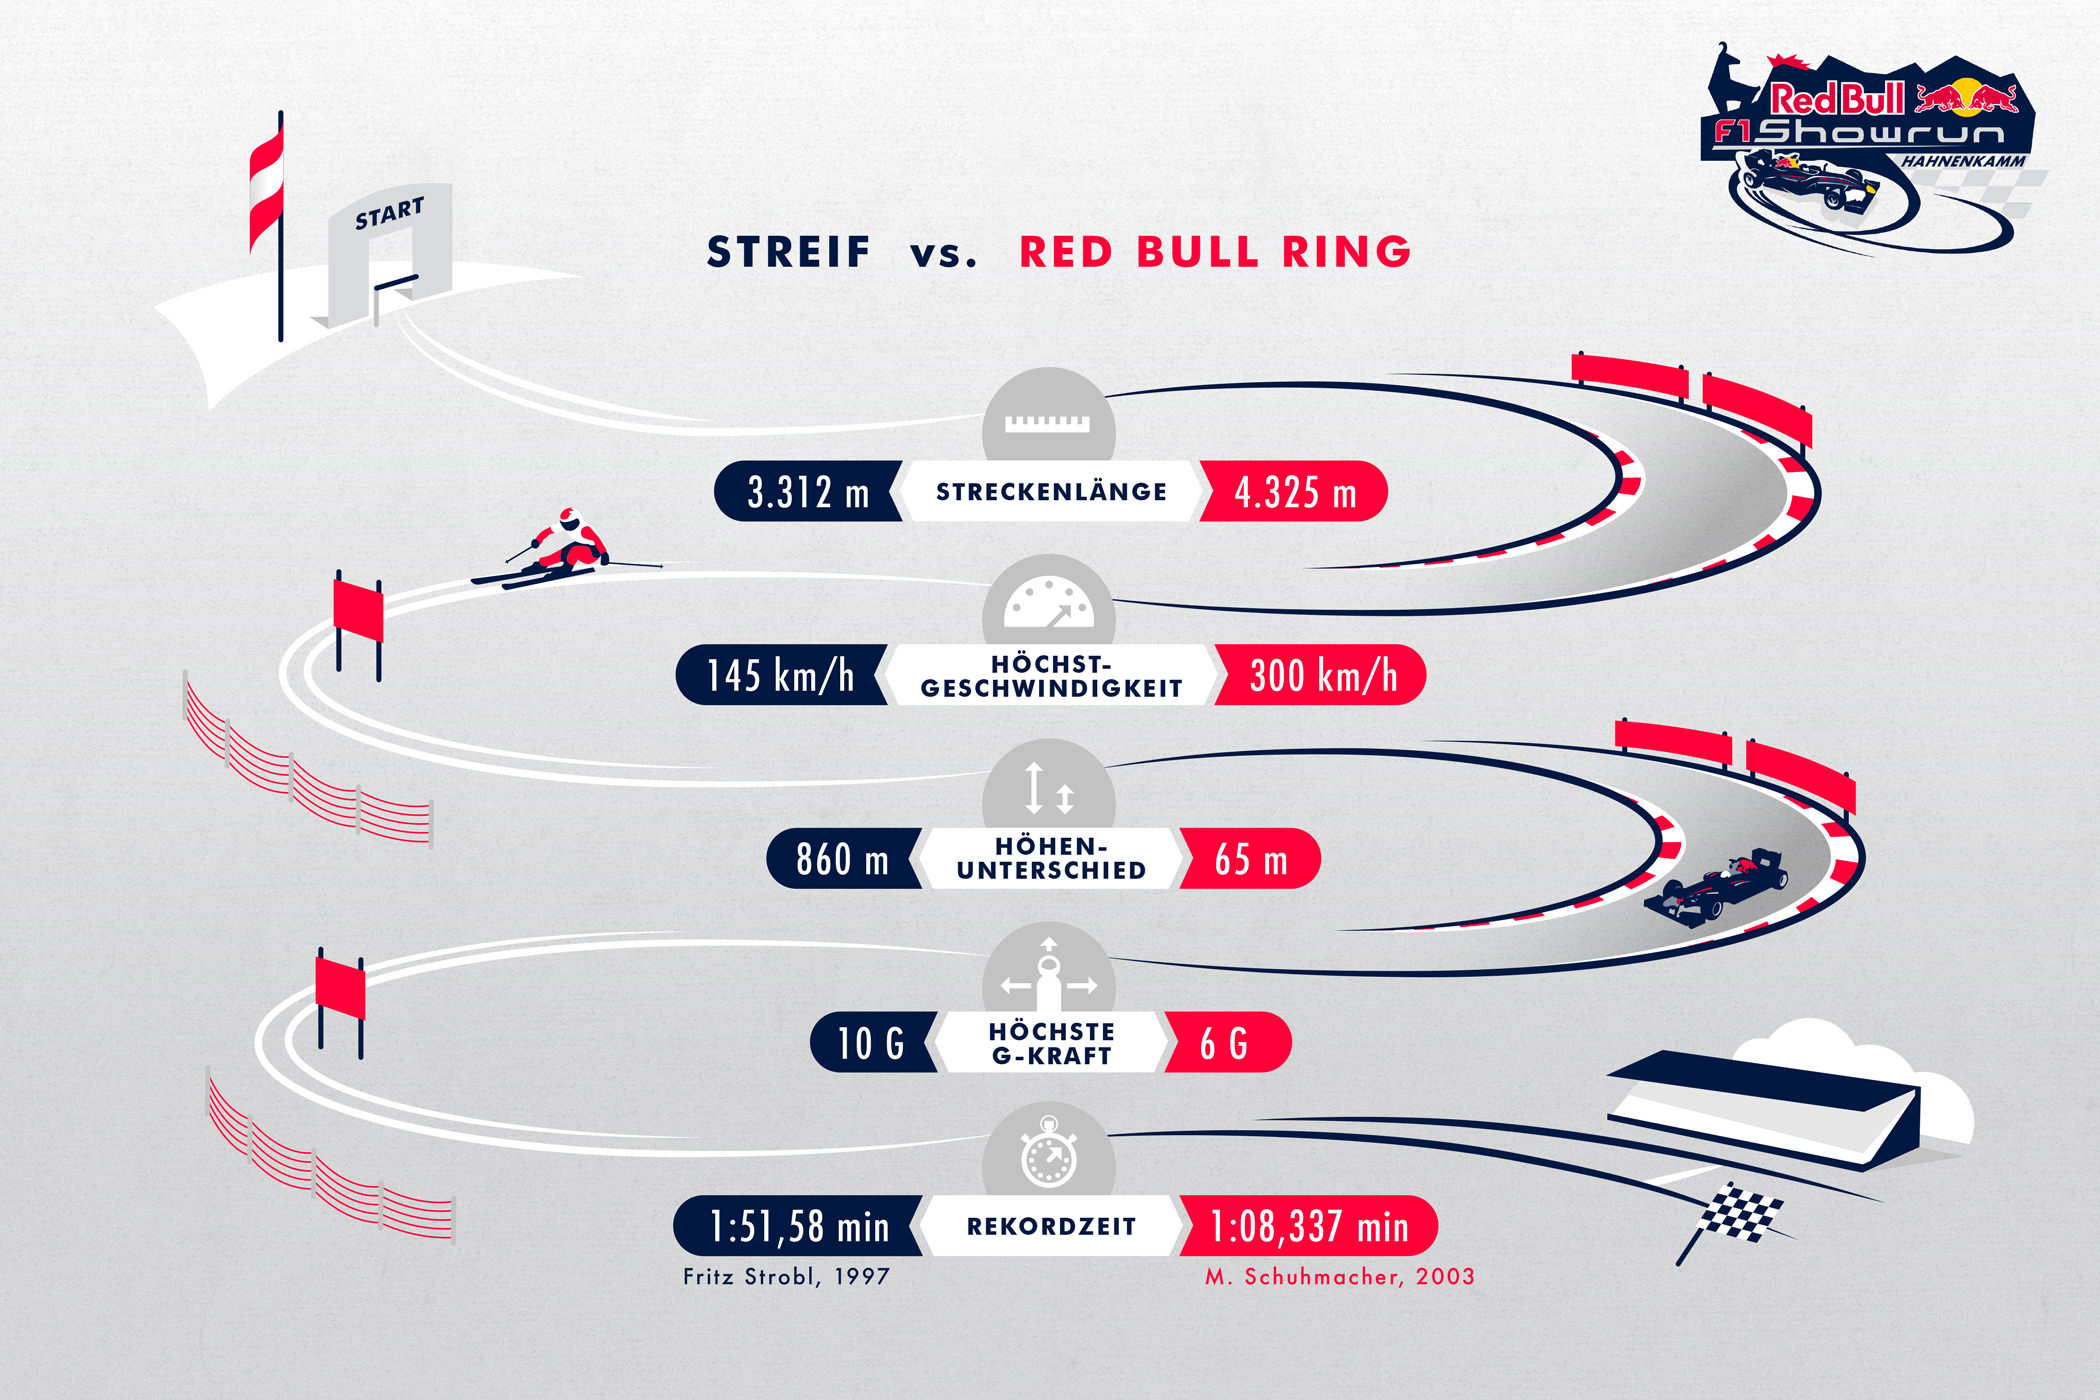 Red Bull — Streif vs Red Bull Ring